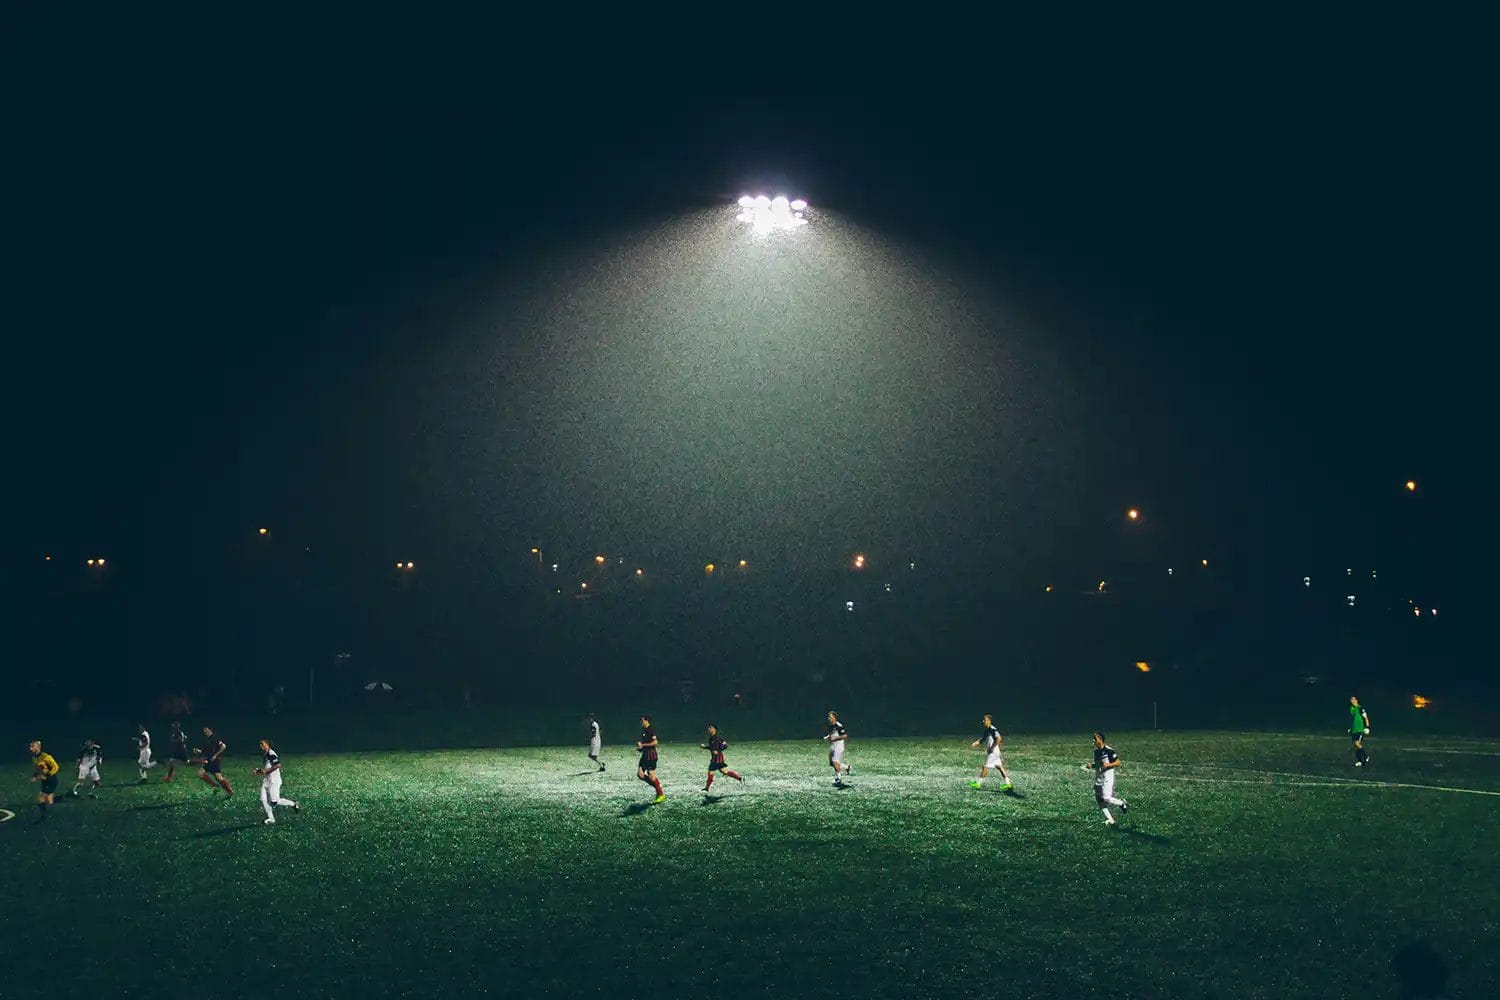 a football game at night